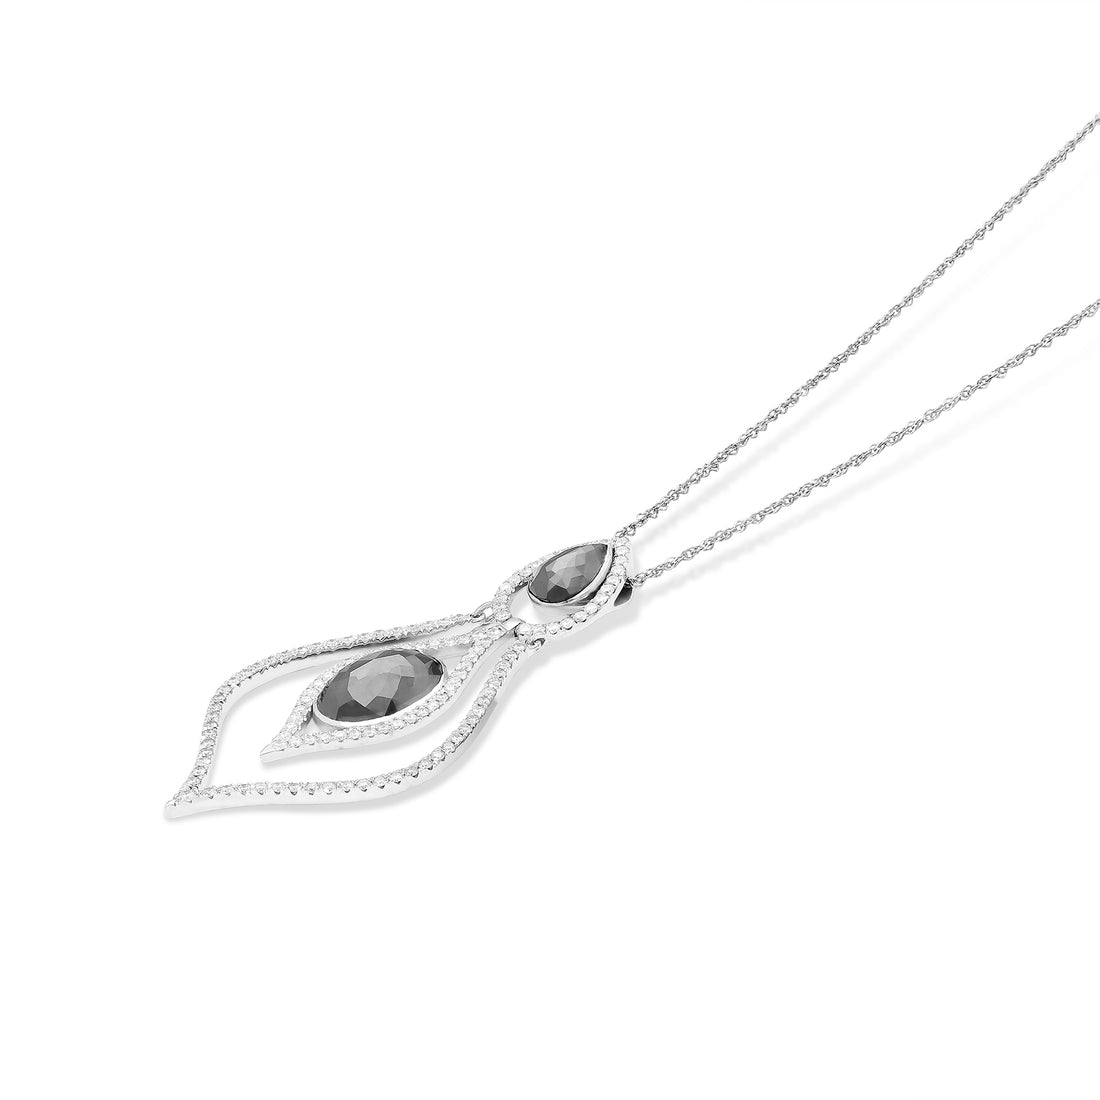 Black Diamond Pendant Necklace - 7 Carat